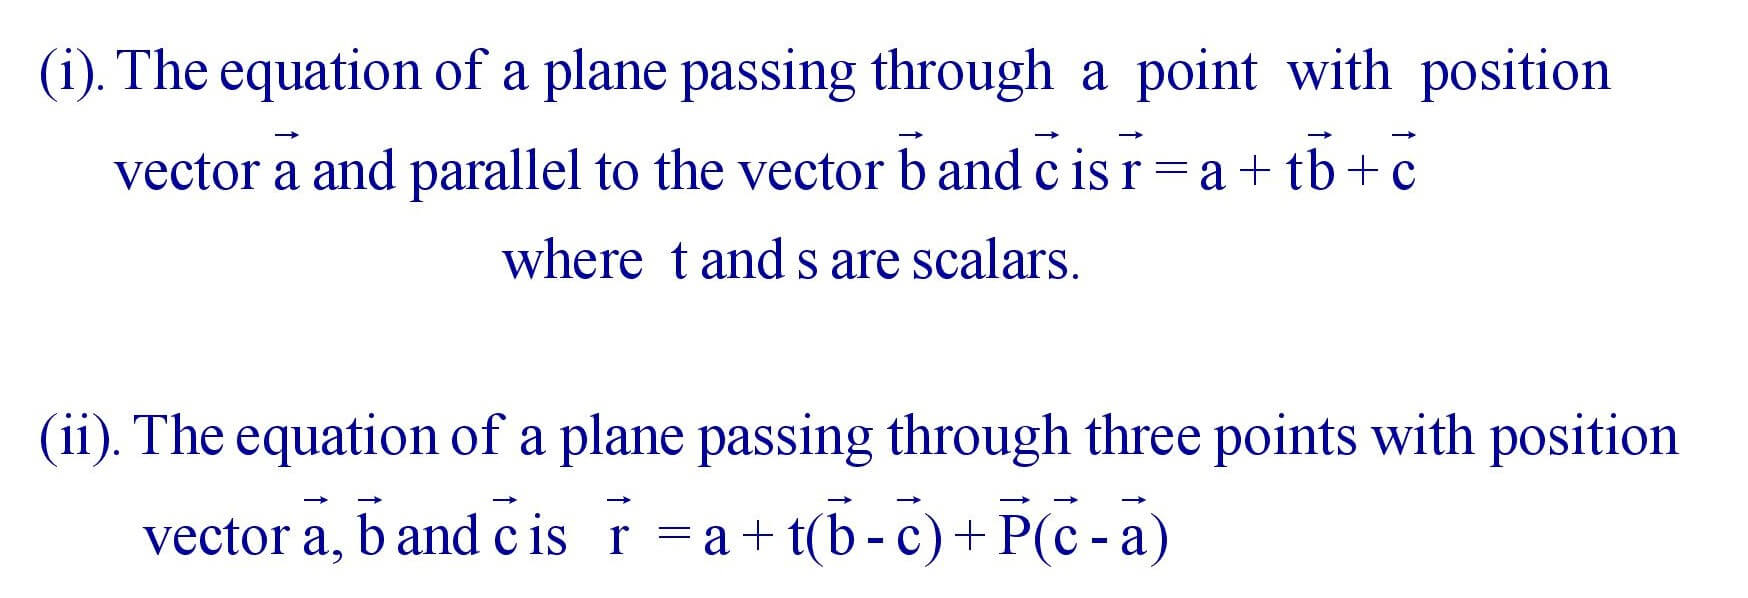 Equation of a plane